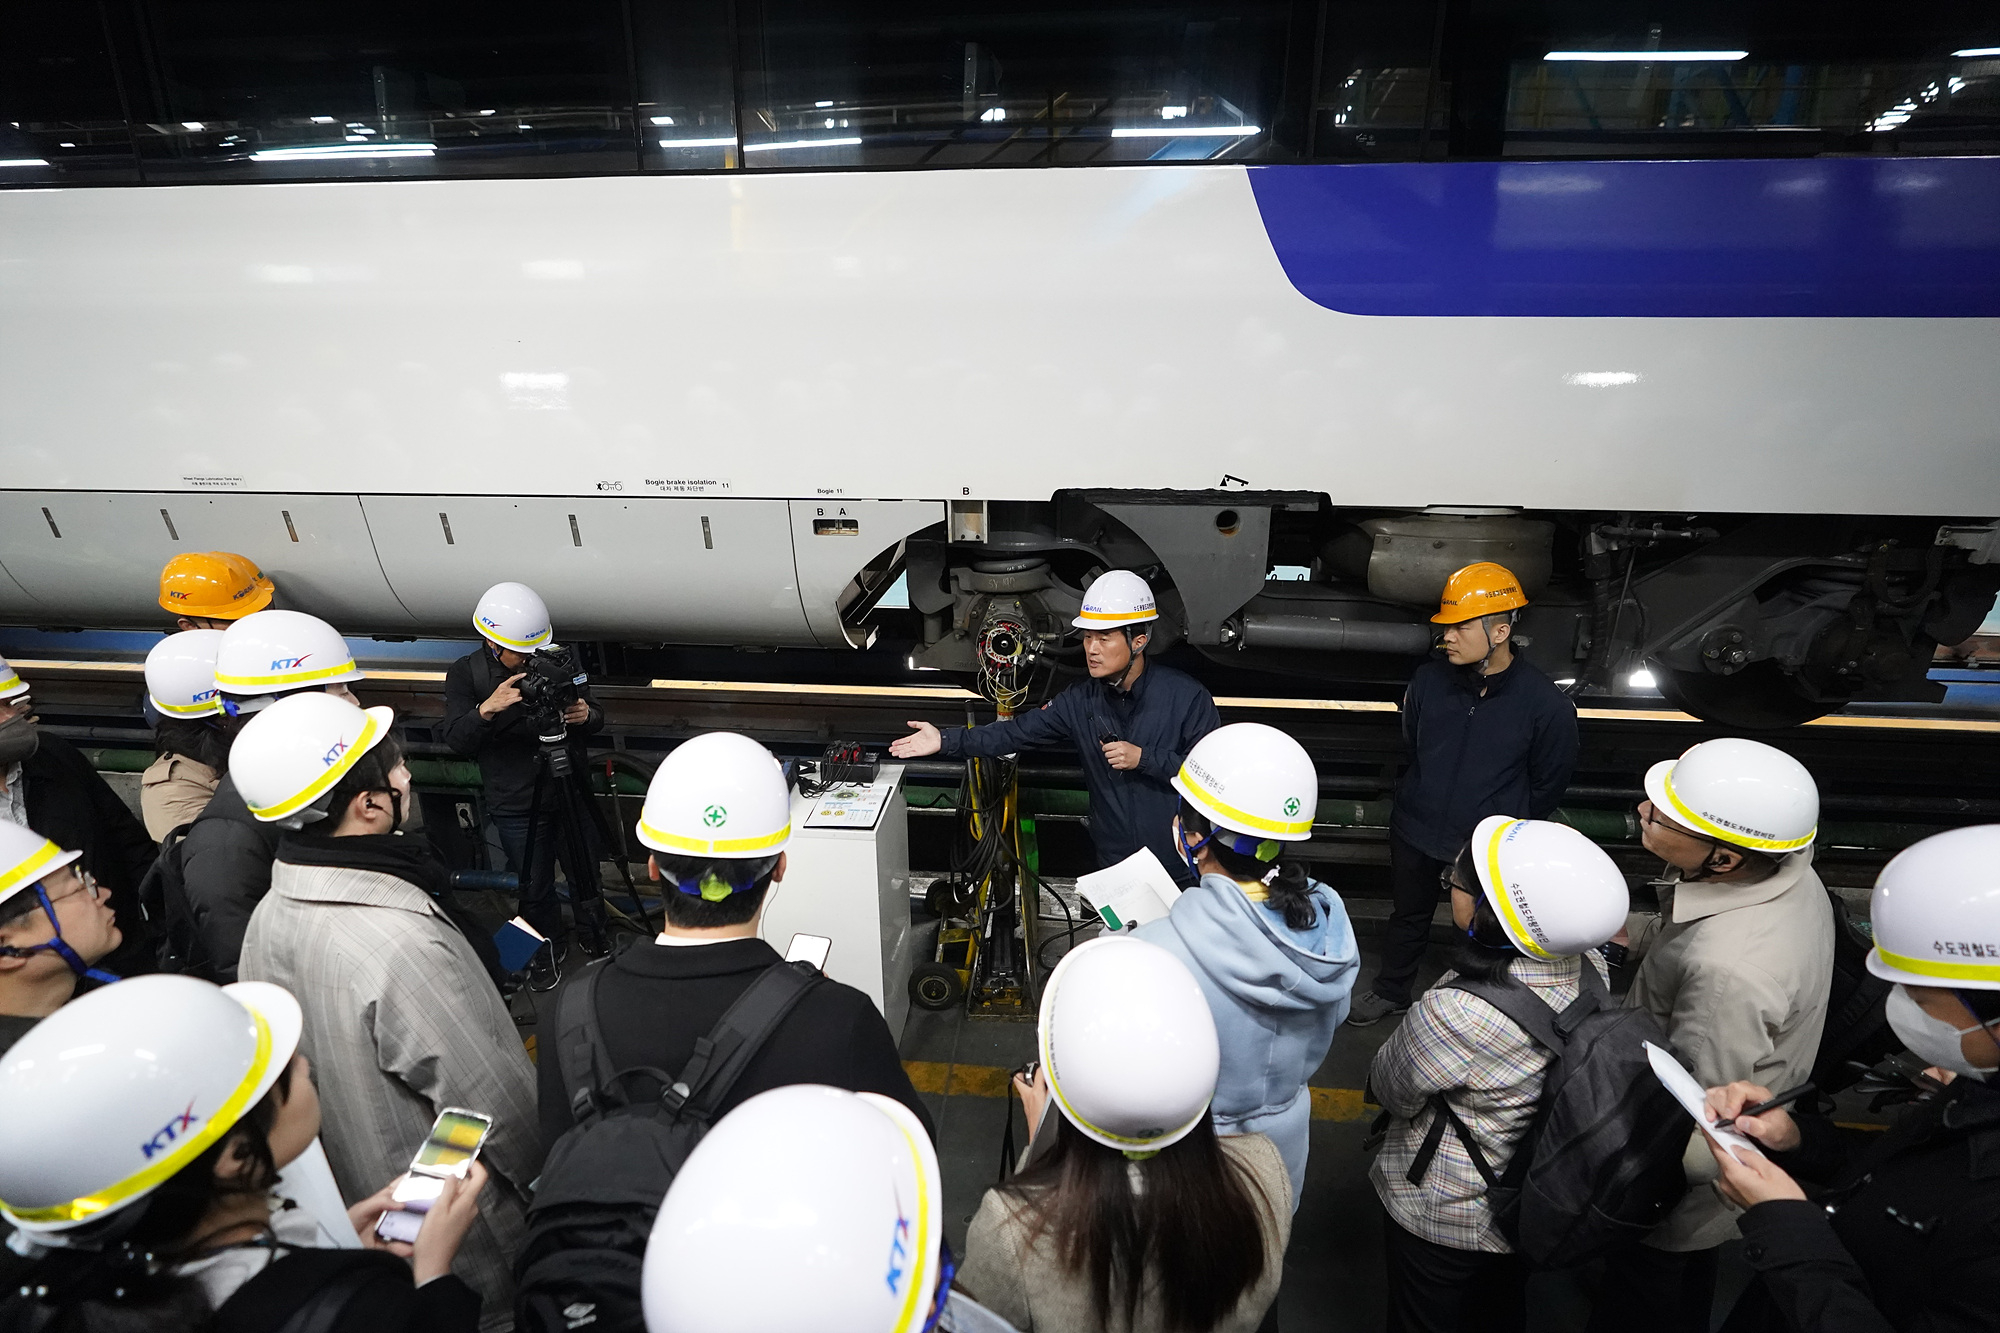 수도권철도차량정비단 경정비동에서 점검이 이뤄지는 모습을 코레일 직원이 설명하고 있다. (사진=코레일 제공)